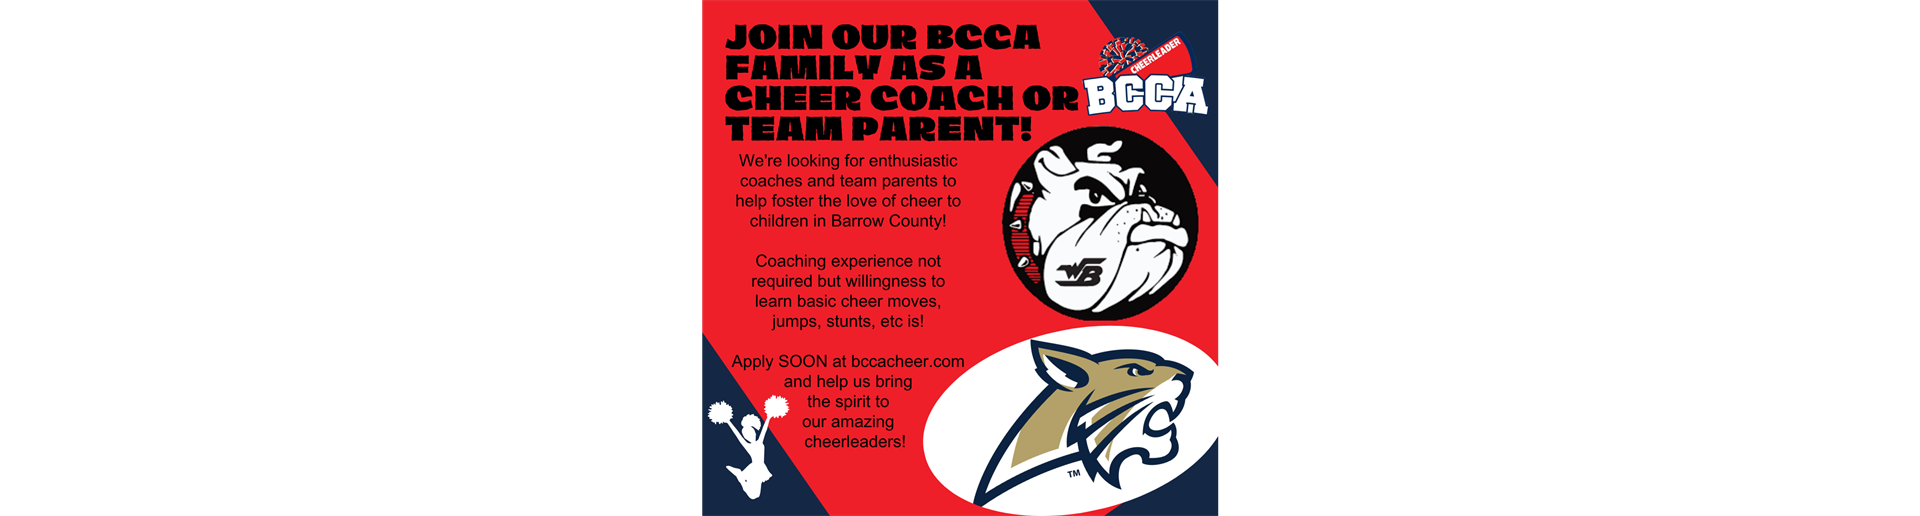 Volunteer to Coach! Applications Open Soon!